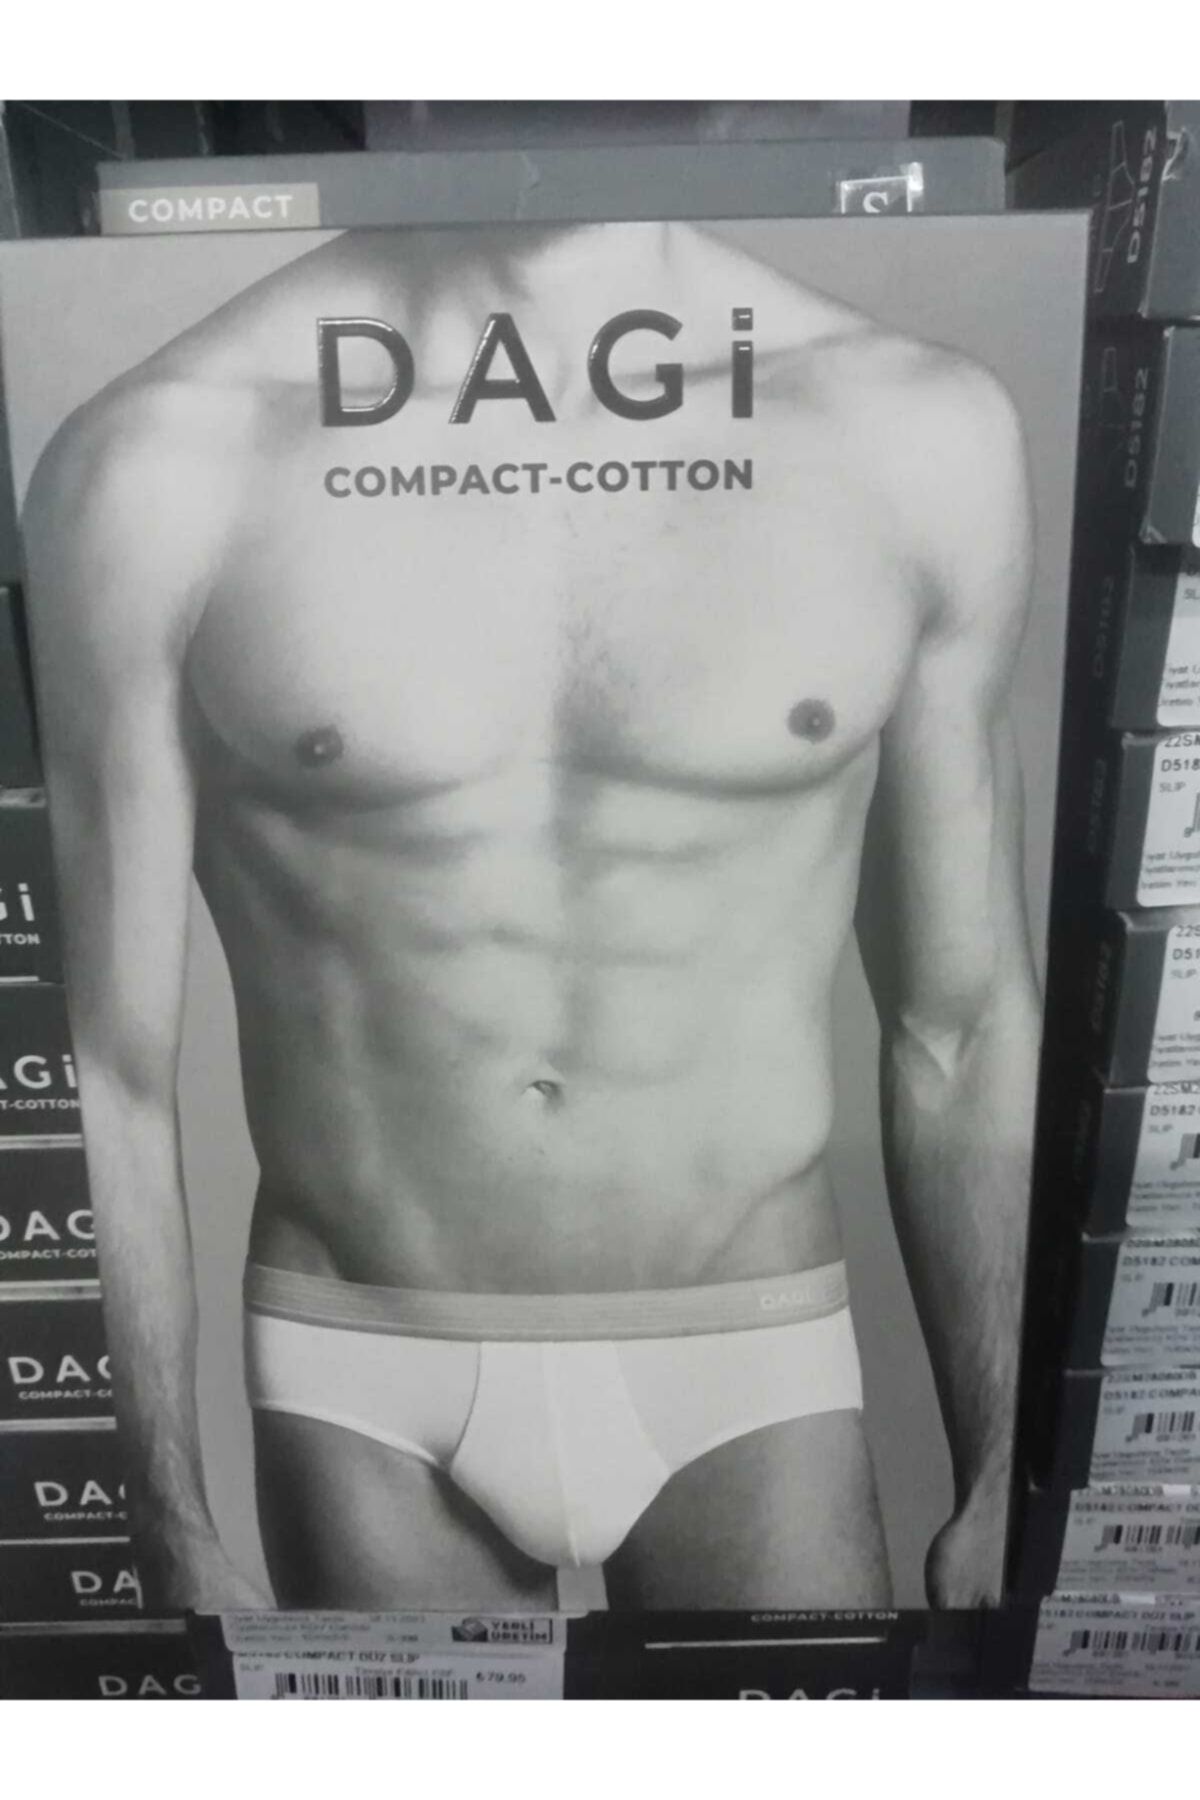 Dagi Erkek Compact-cotton Slip